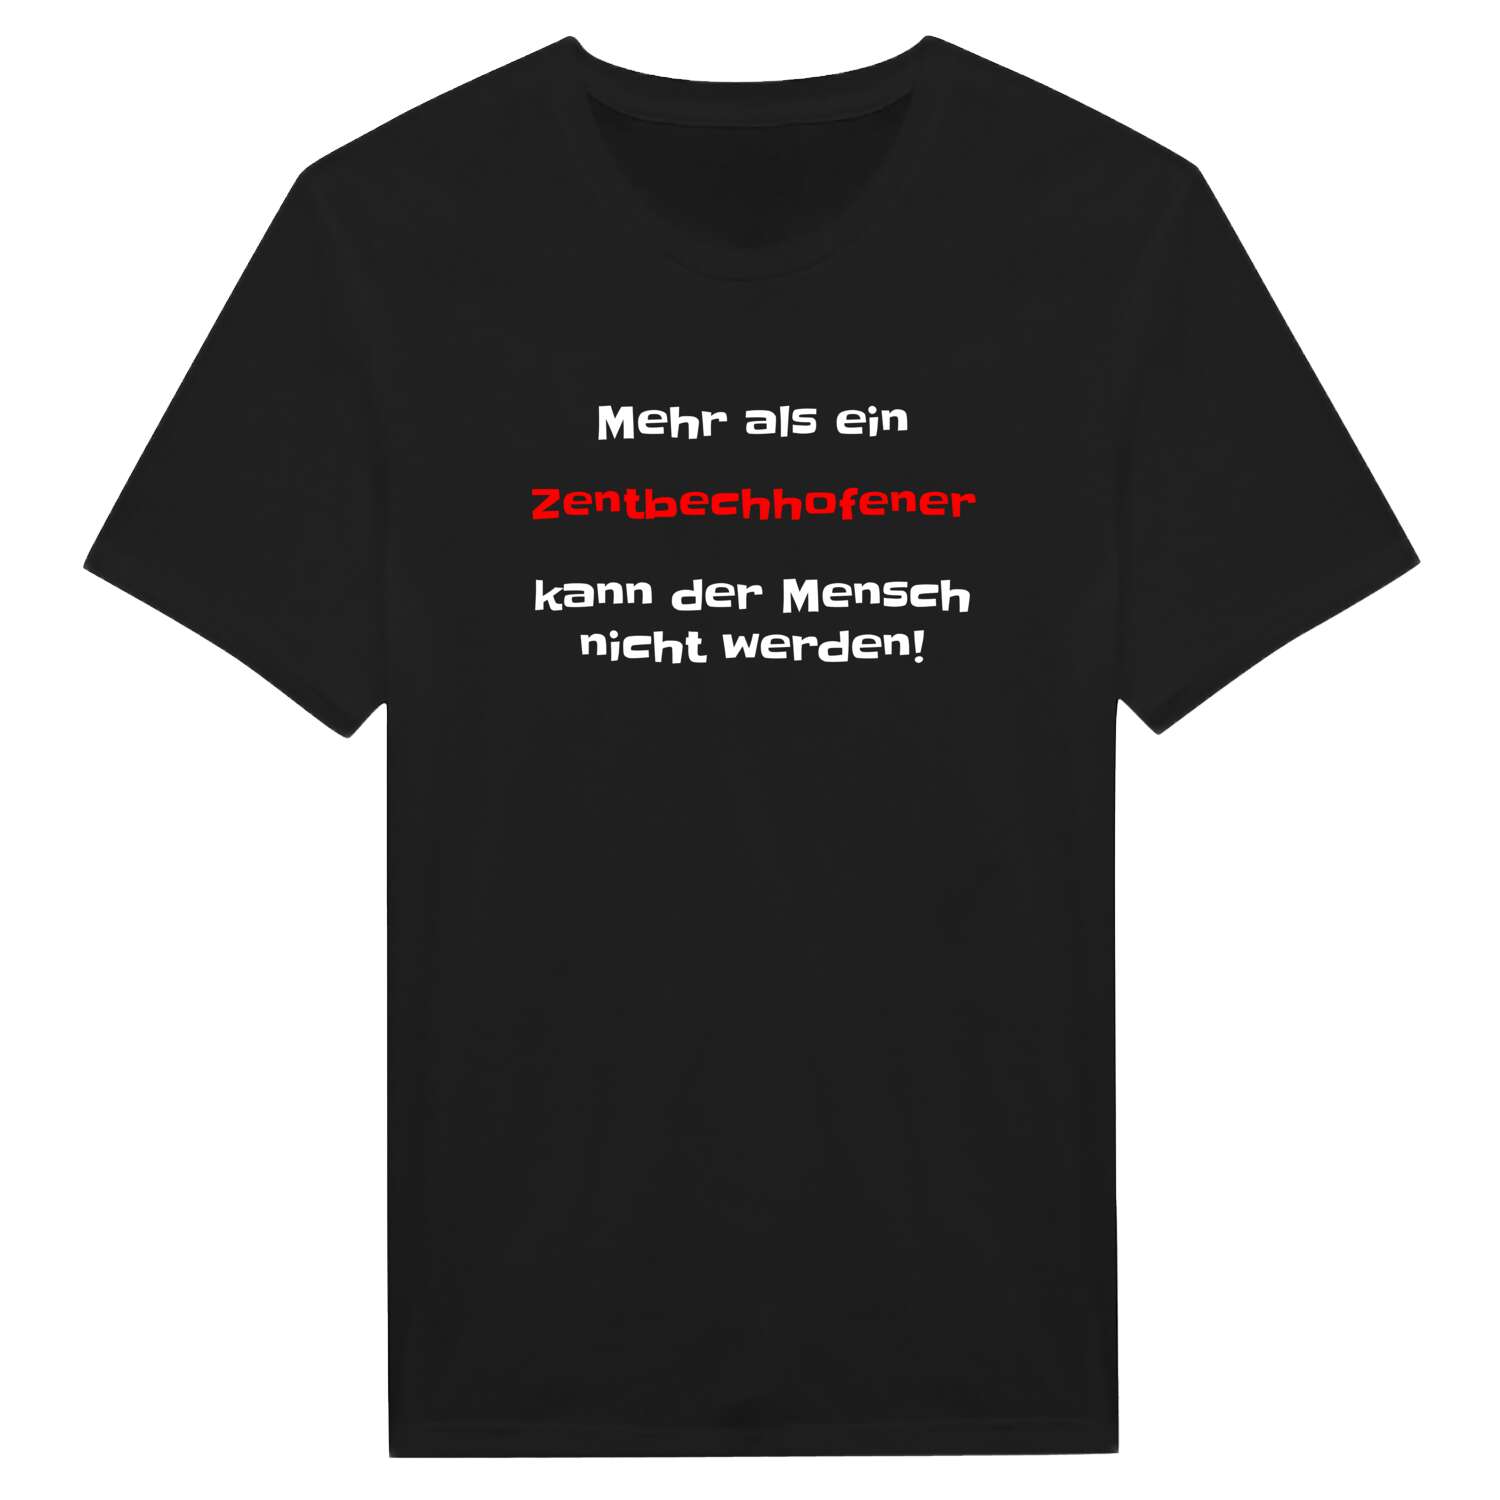 Zentbechhofen T-Shirt »Mehr als ein«